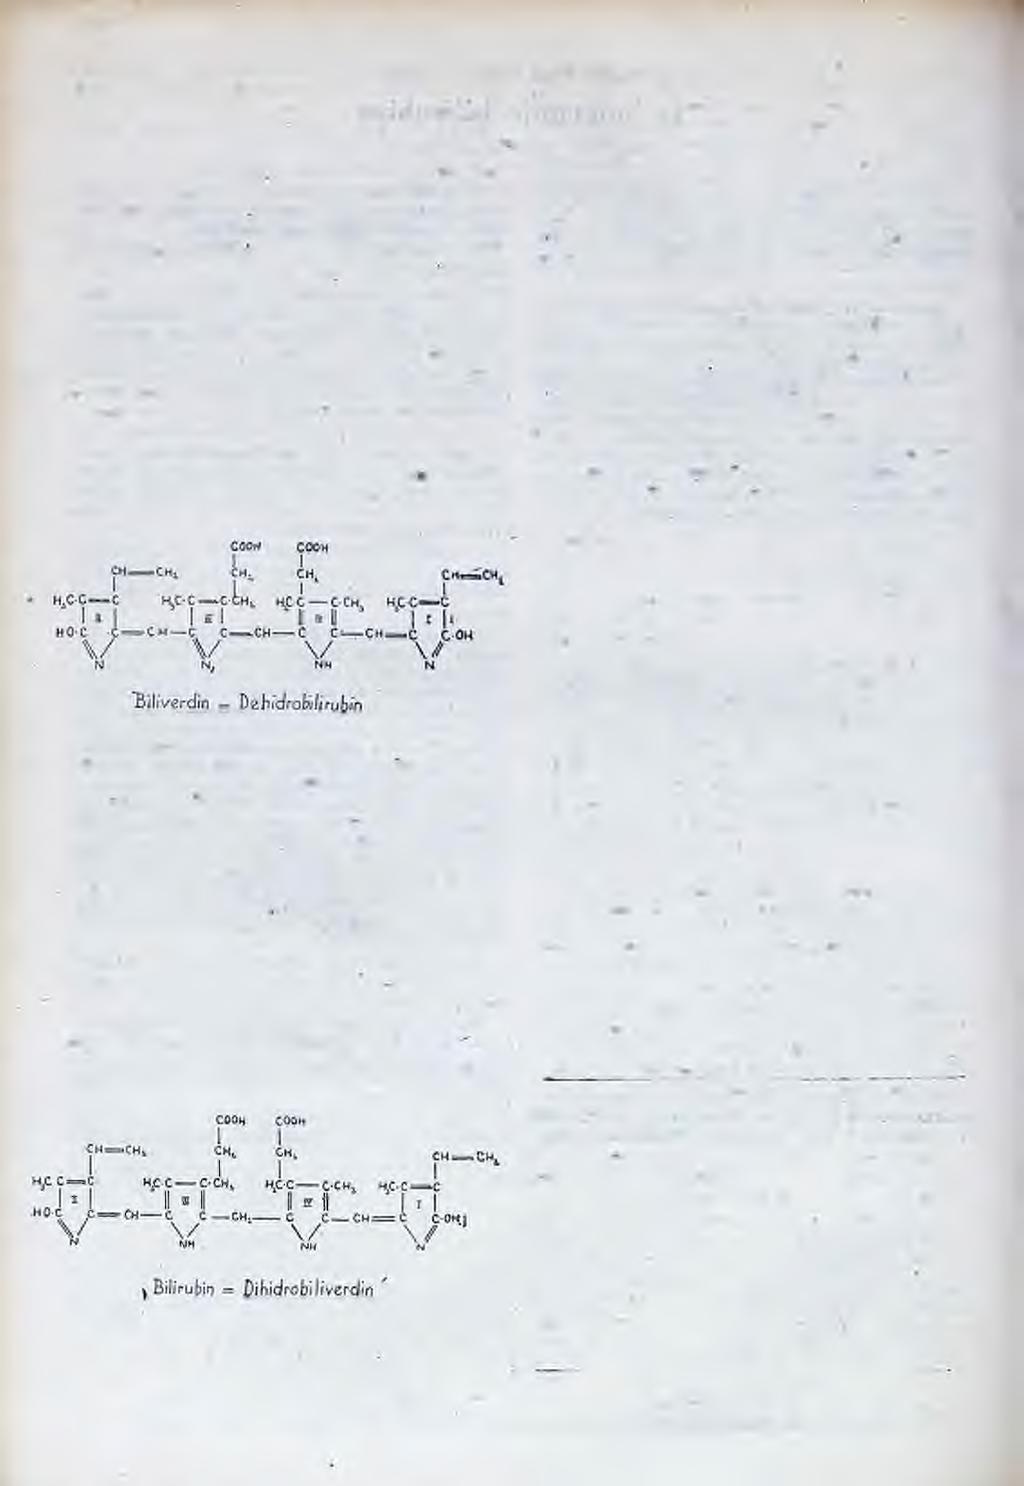 4 4 2 matsko željezo: Fe od verd ohemohrom ogena (produkt razgradnje hemoglobina) i katalaze. Lem berg i njegovi učenici (1938. g.